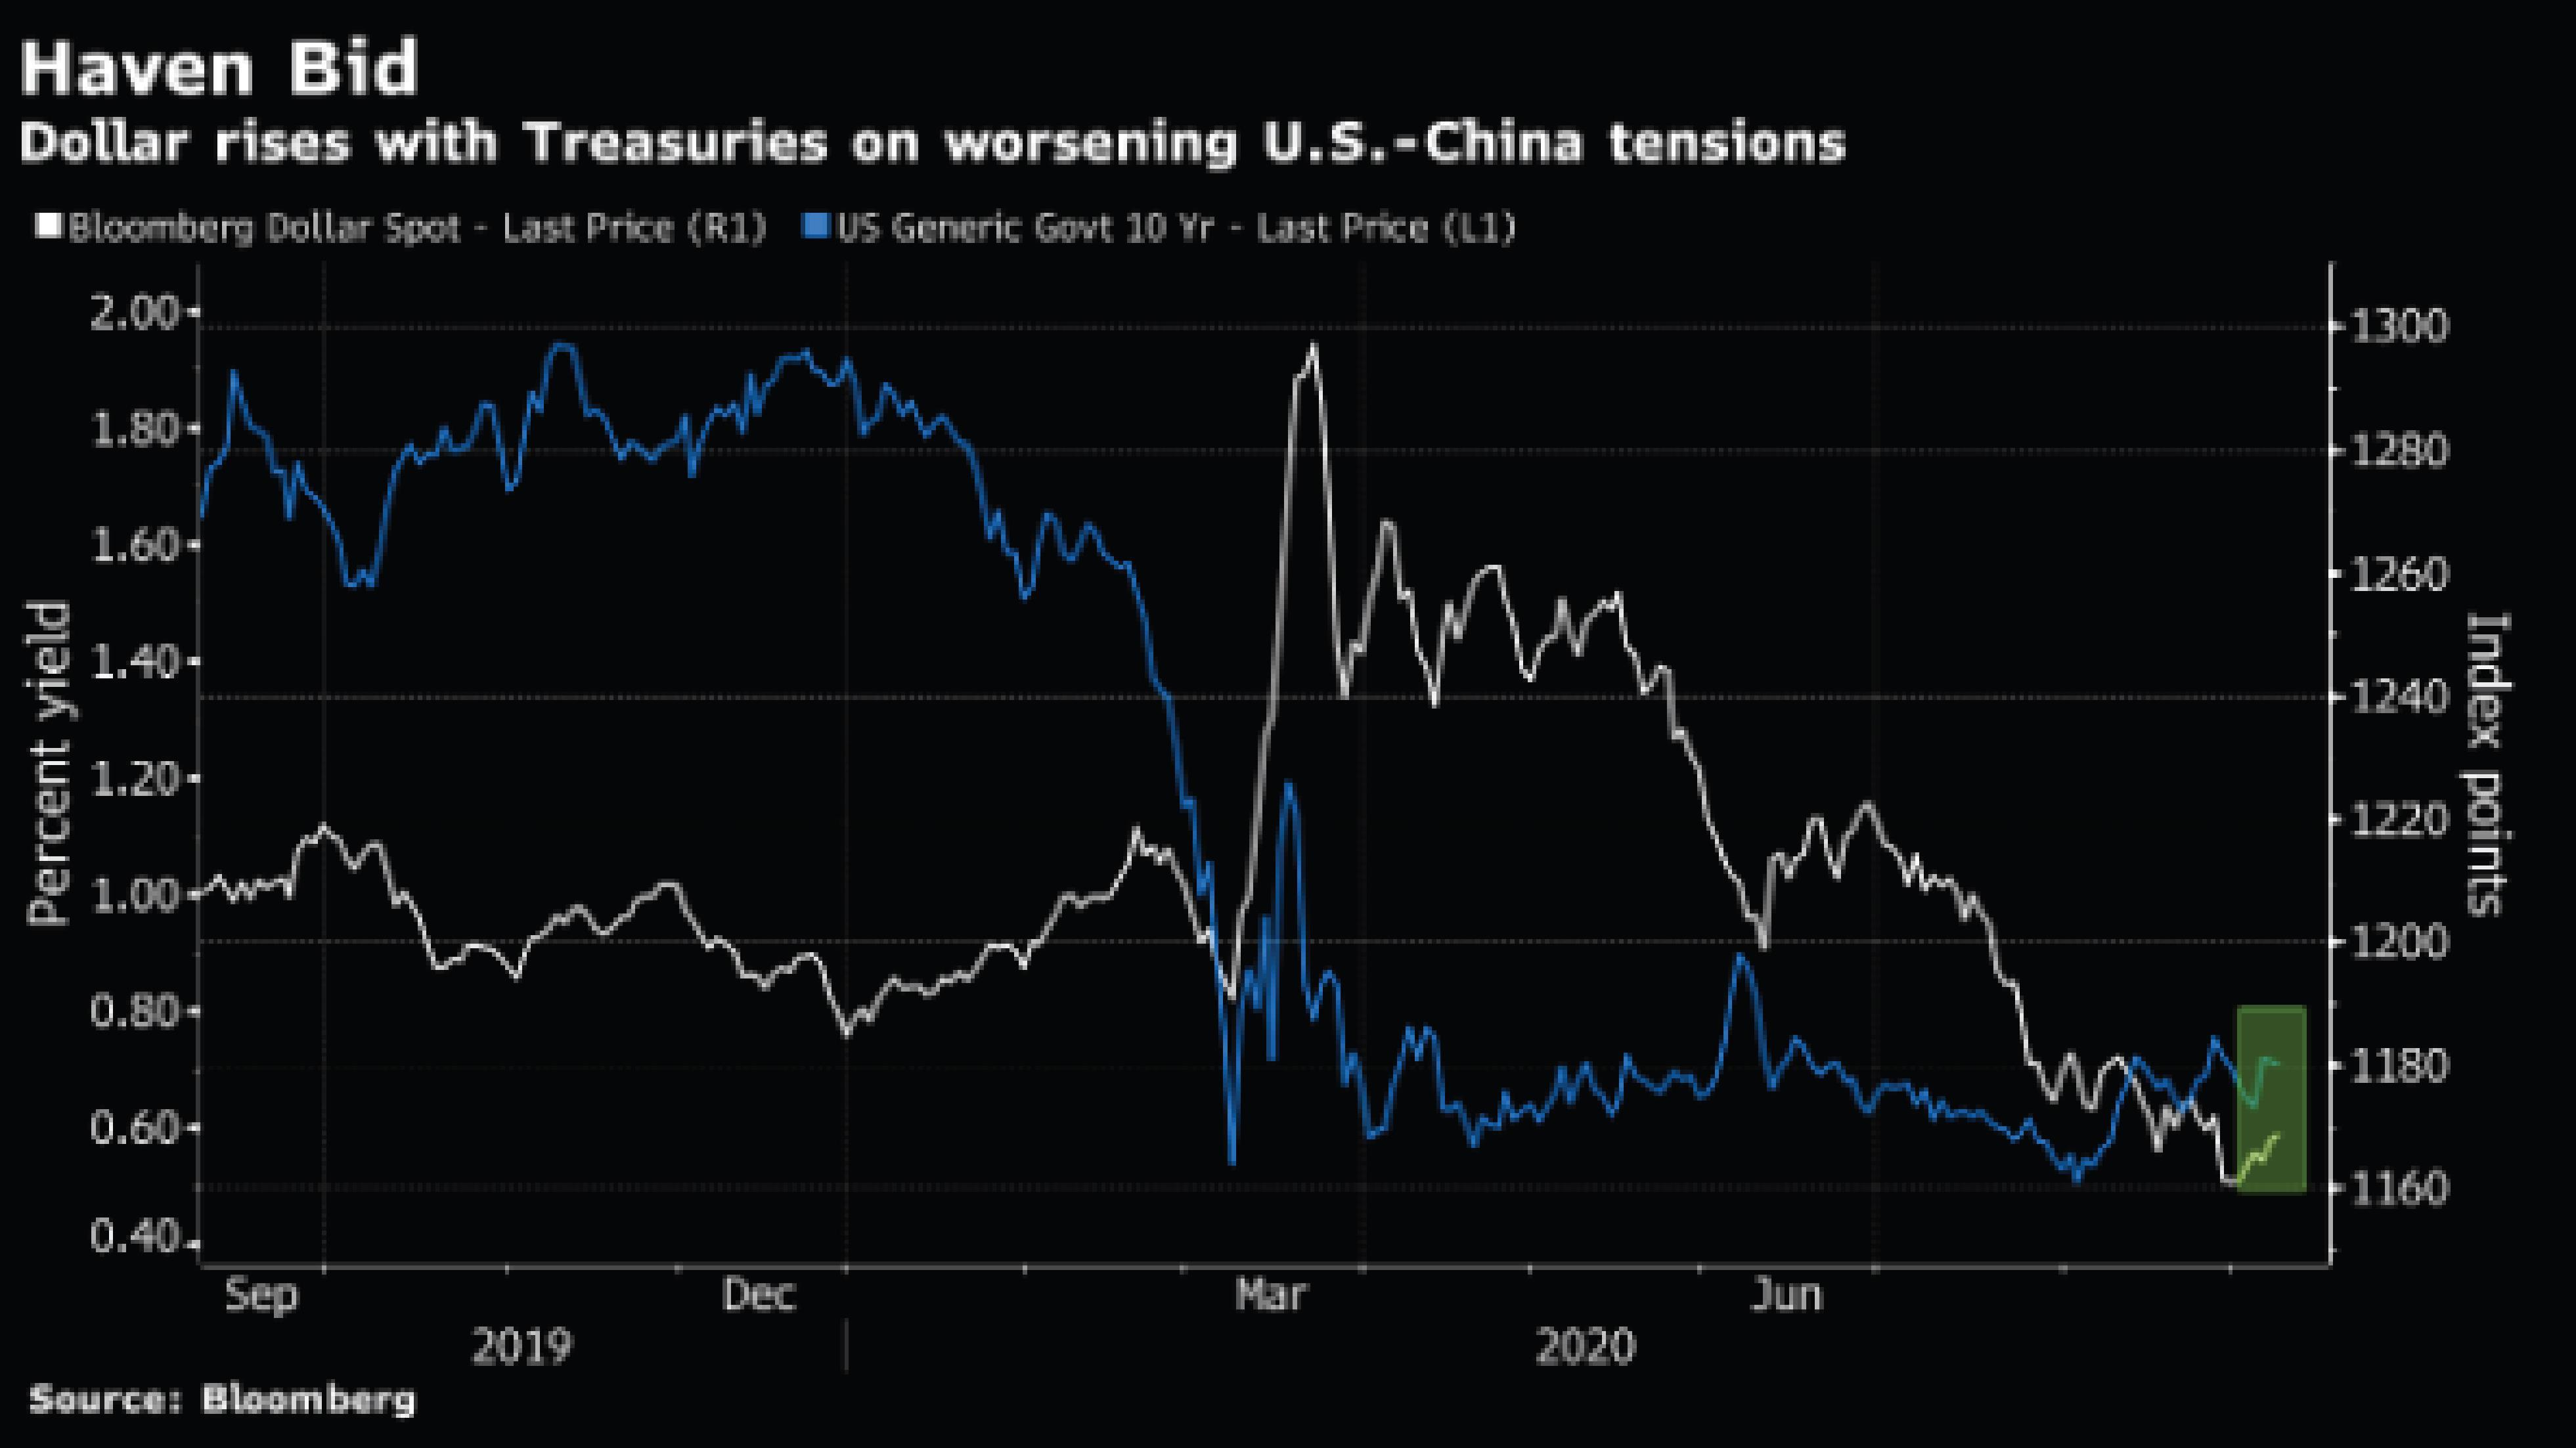 USD tiếp tục phục hồi khi căng thẳng Mỹ - Trung gia tăng, Bảng Anh lao dốc do bất ổn Brexit